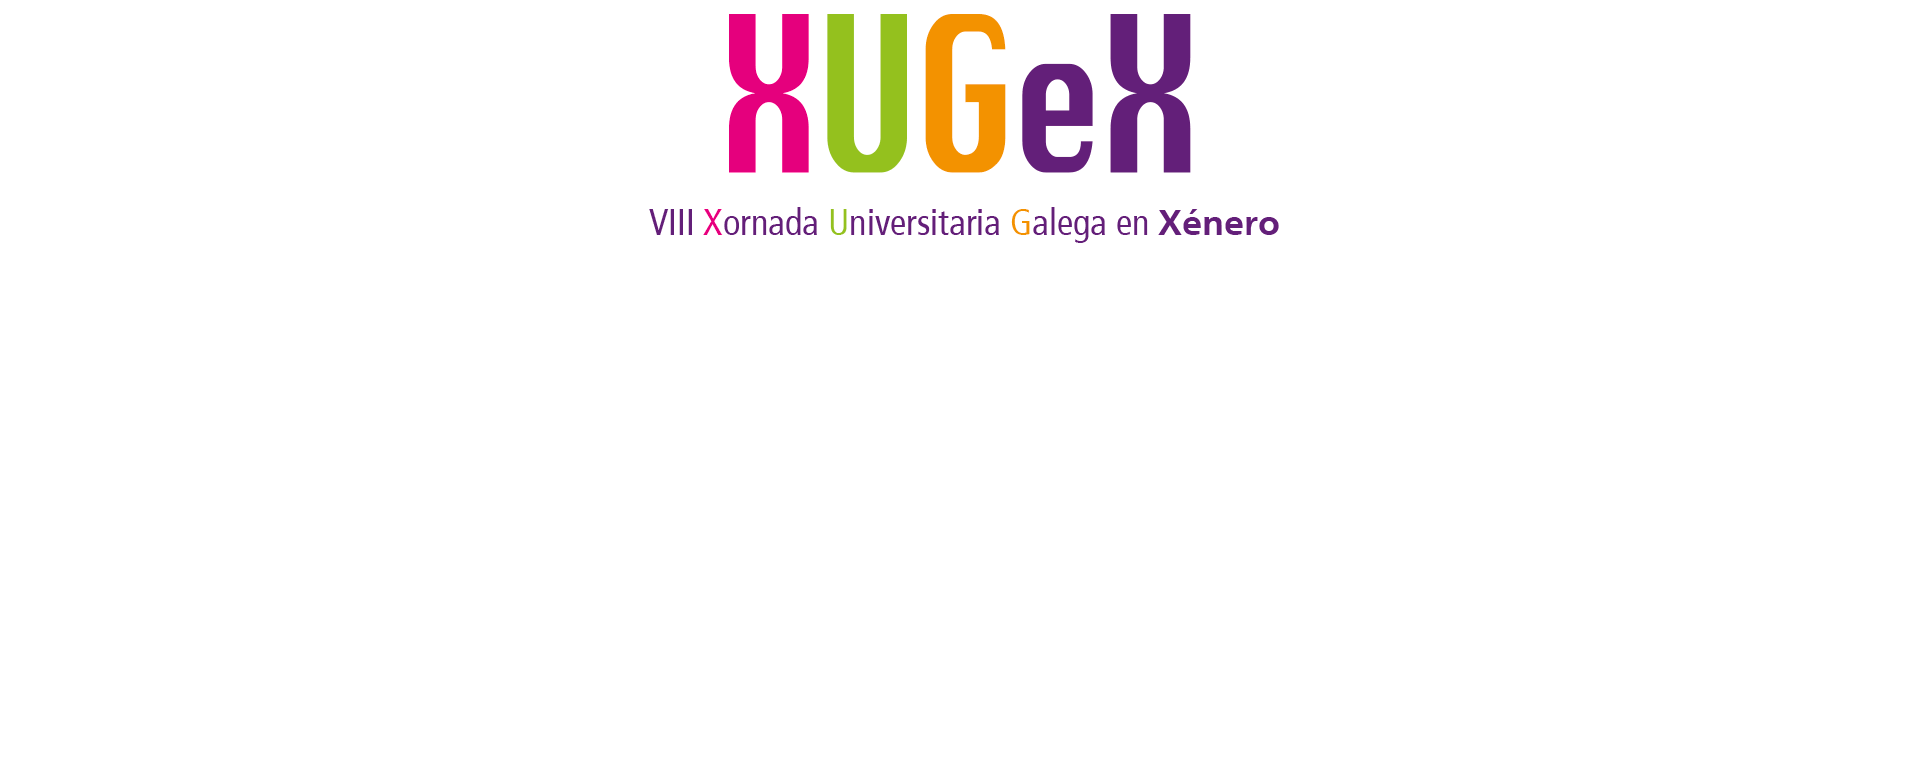 Animación con la imagen de las VIII Xornada Universitaria Galega en Xénero